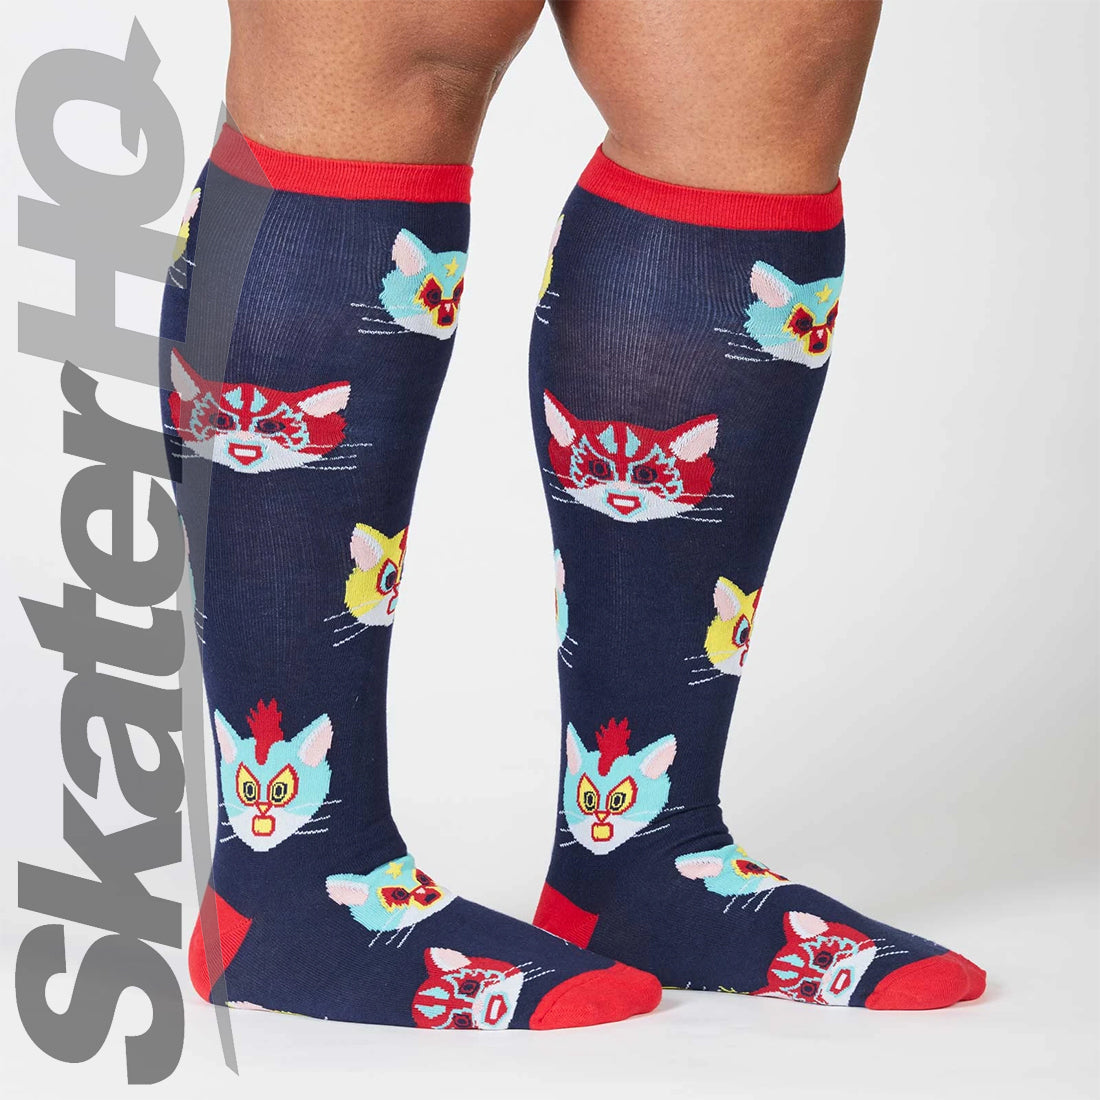 Sock It To Me - Gato Libre - Stretch Knee High Socks Apparel Socks